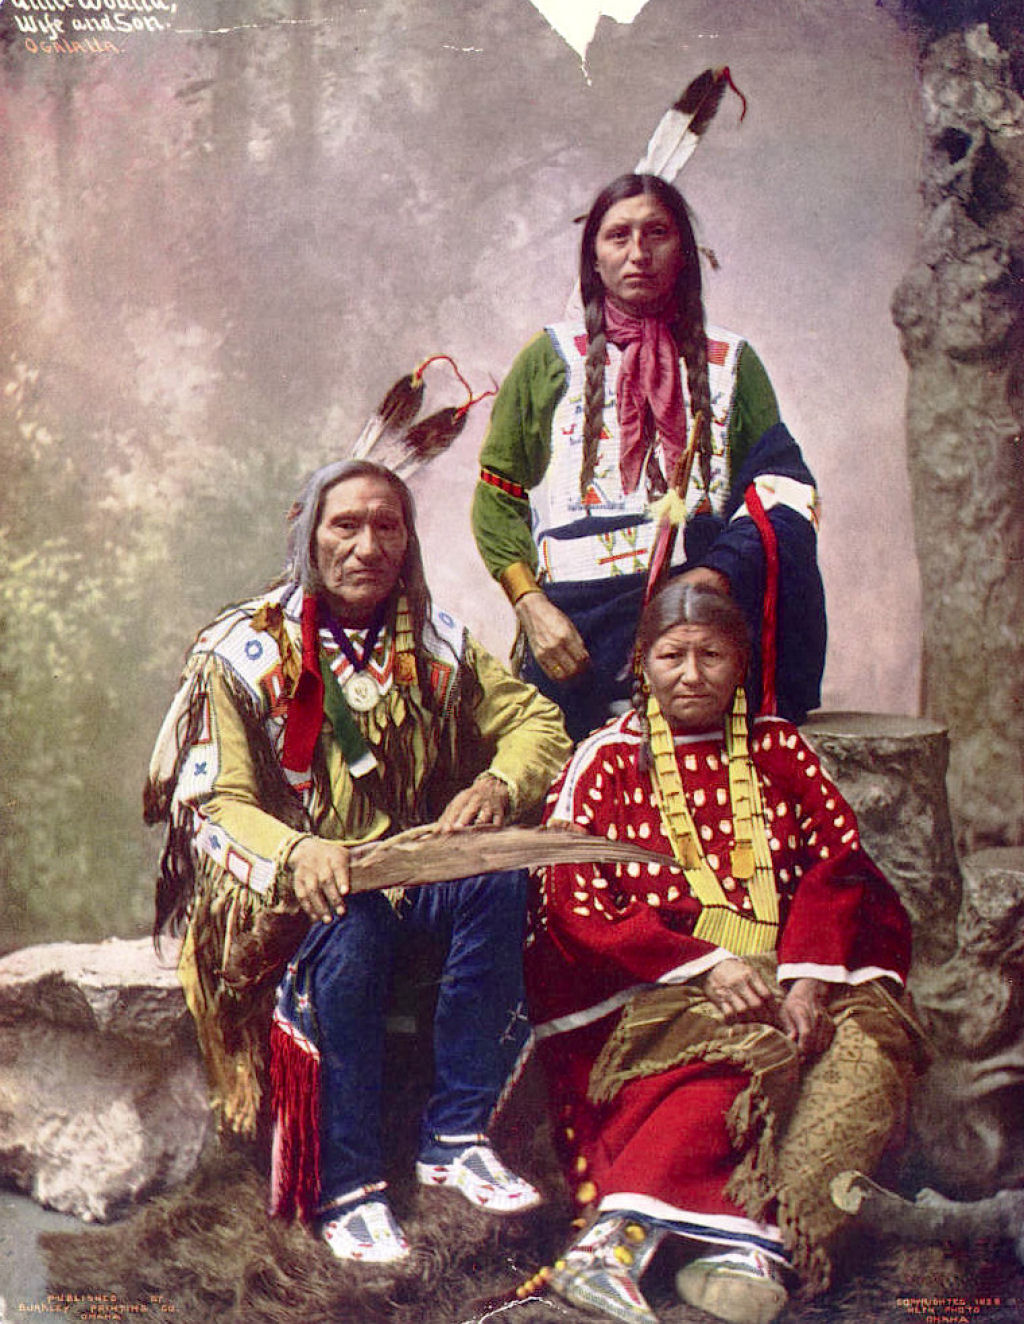 Impressionantes fotos históricas coloridas de nativos americanos do final do século 19 e início do século 20 12